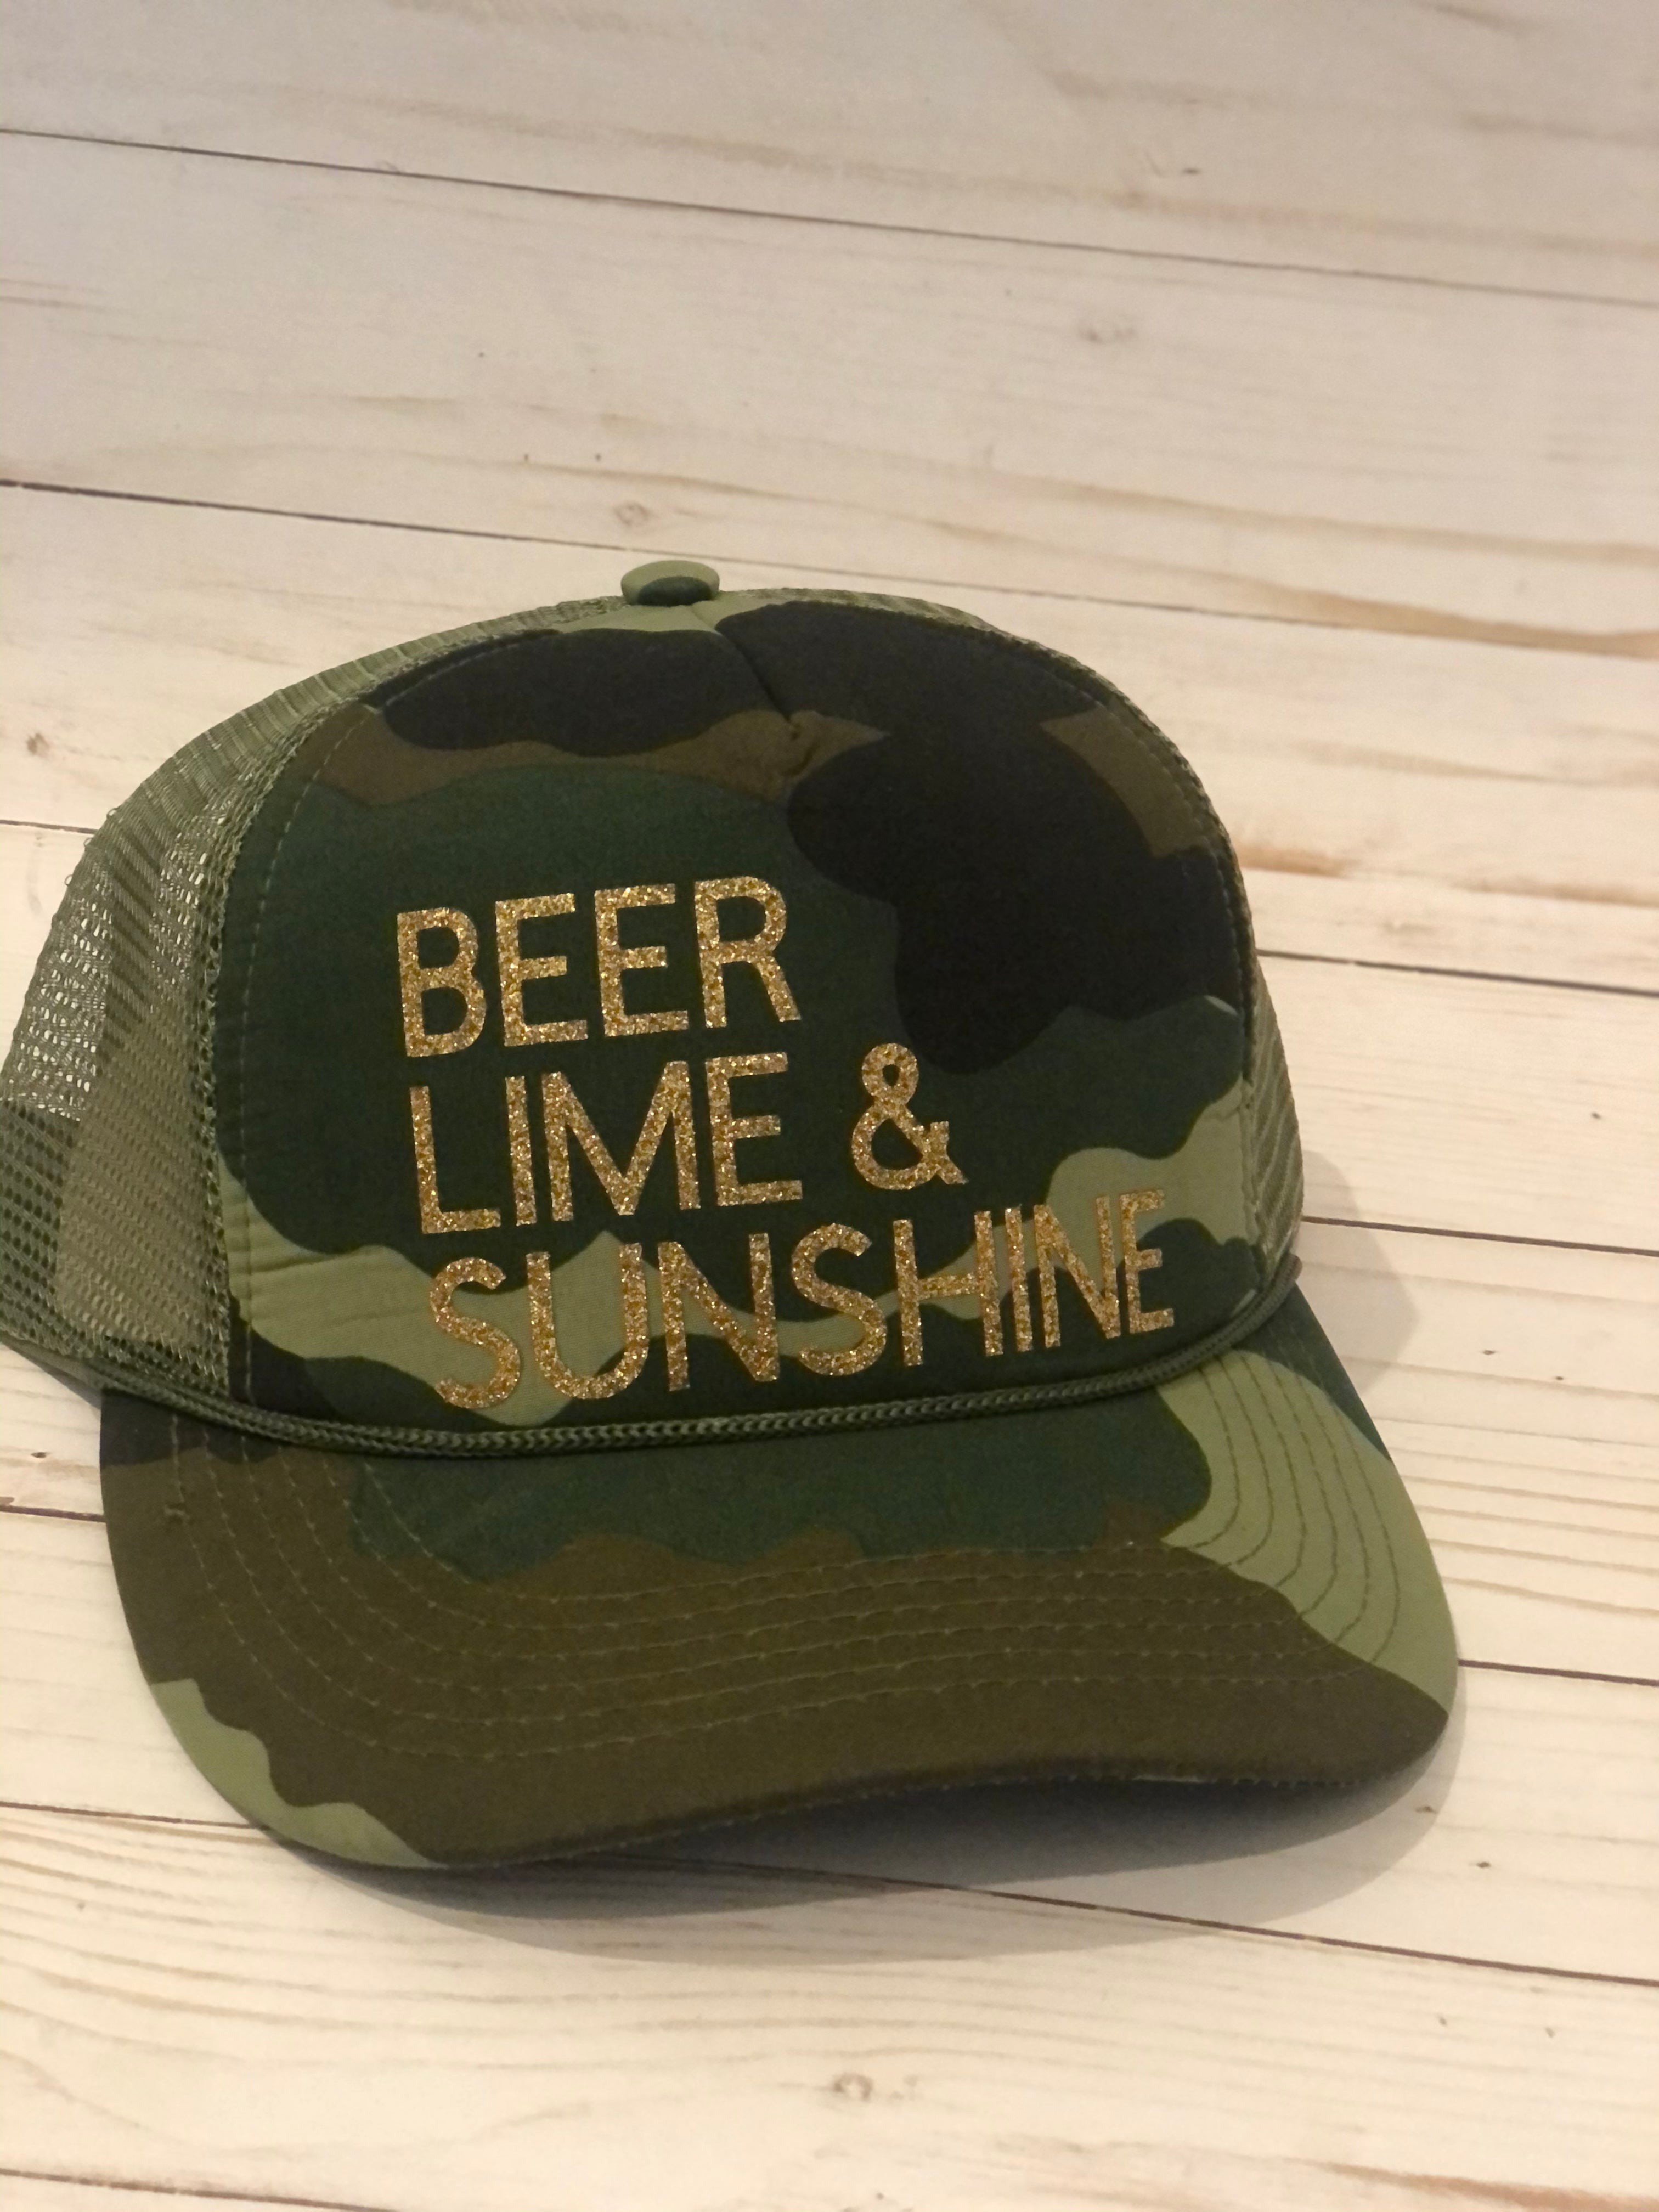 Beer Lime & Sunshine Trucker Hat